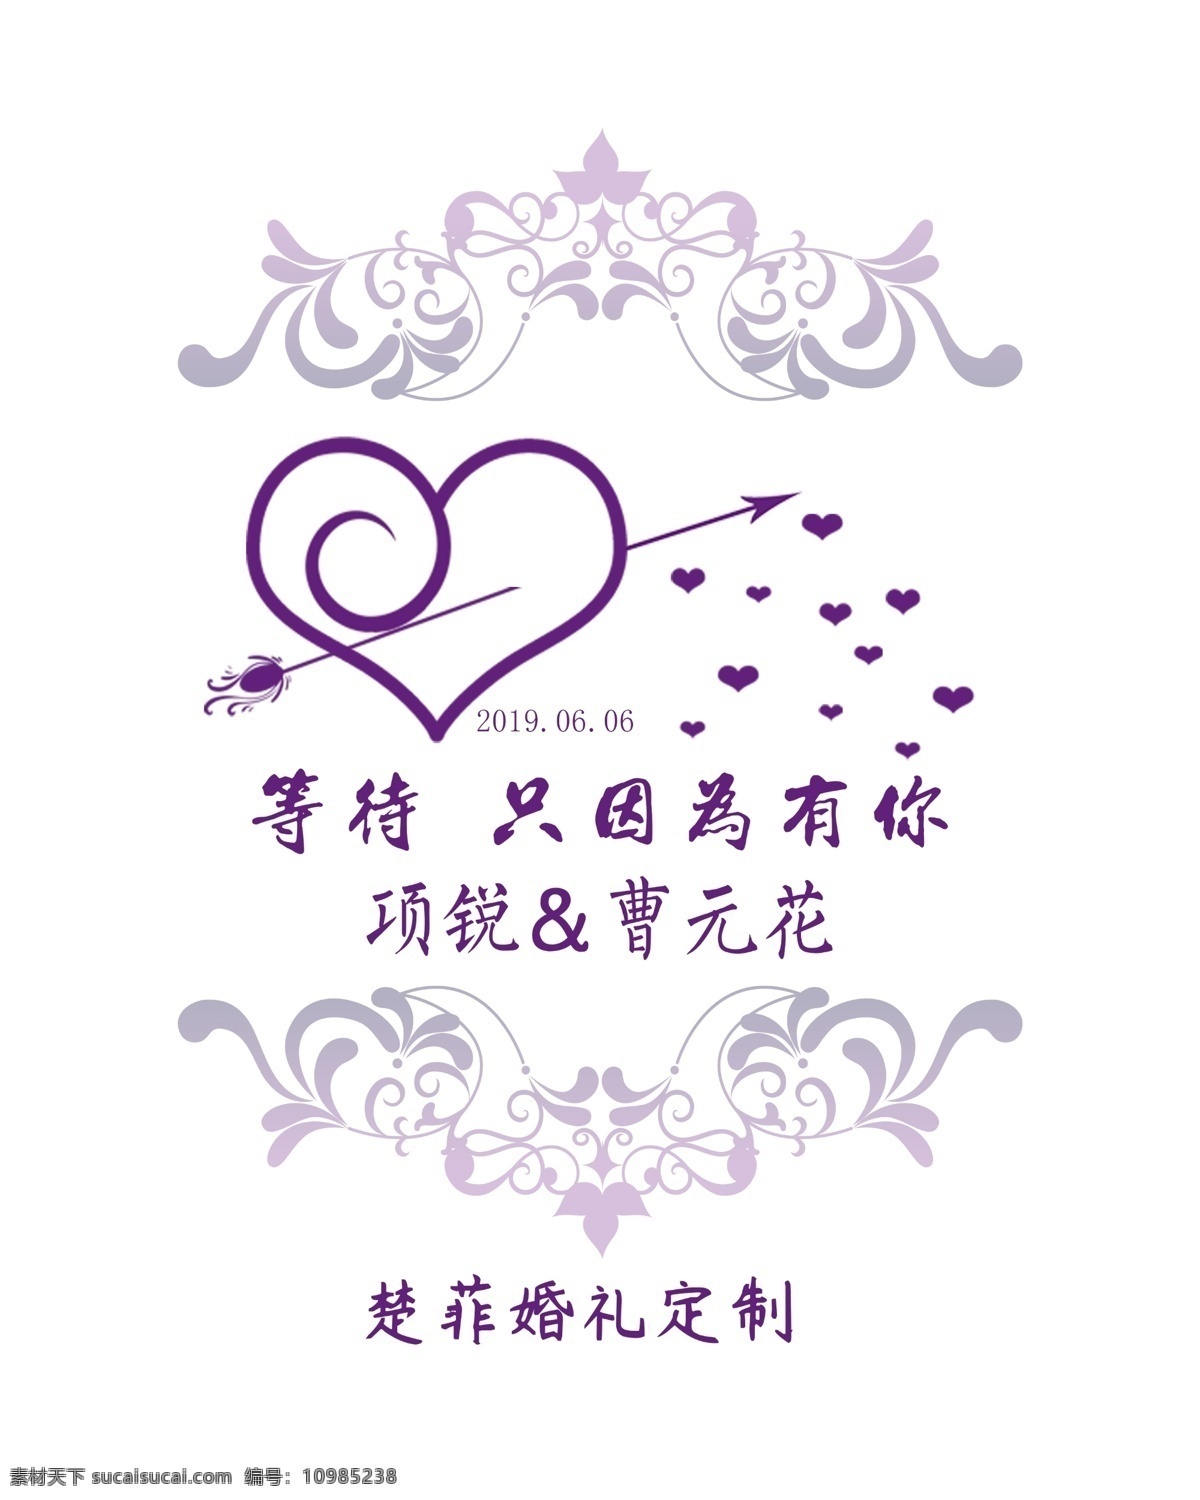 婚礼水牌 紫色婚礼 紫色水牌 婚礼背景 婚礼logo 结婚